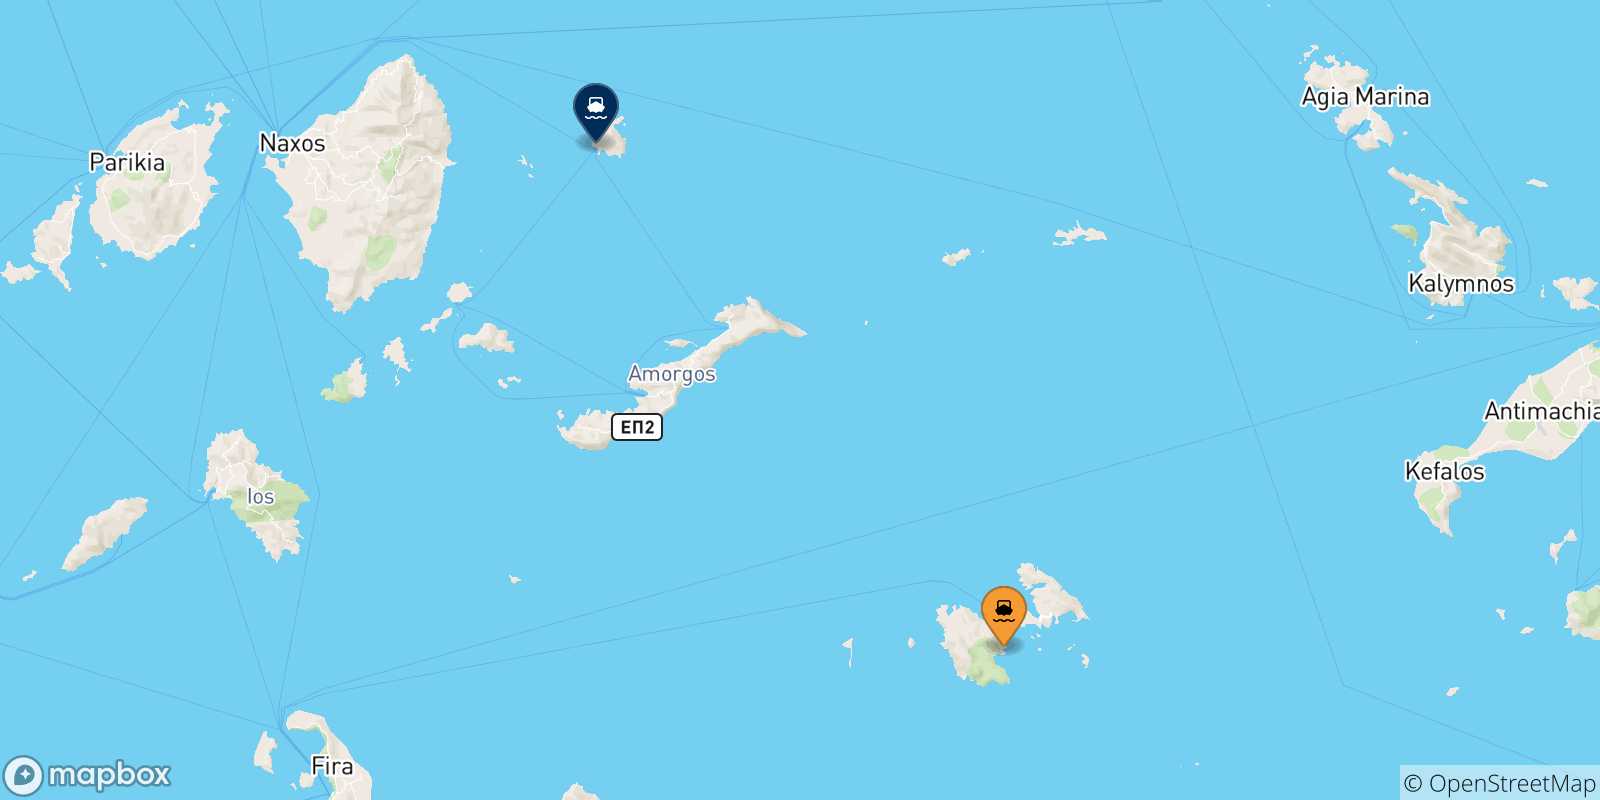 Mappa delle possibili rotte tra le Isole Dodecaneso e Donoussa